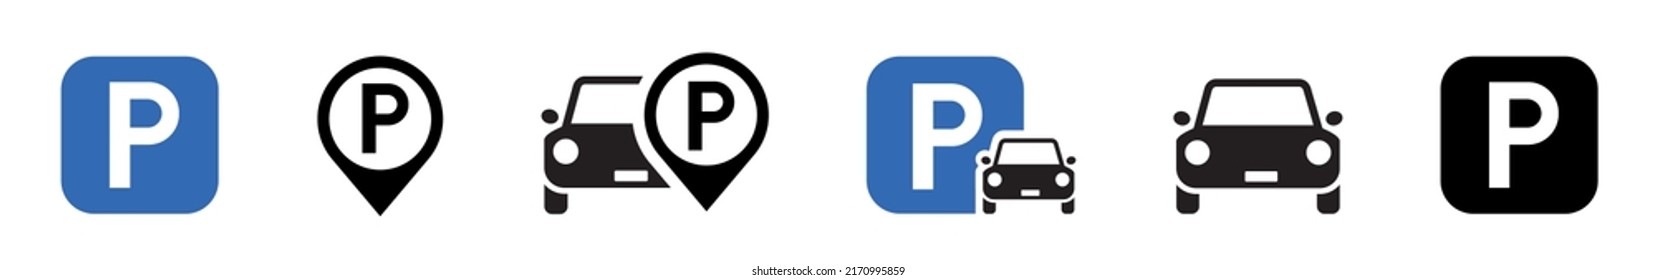 Juego de iconos de estacionamiento. Icono de estacionamiento de coches. Aparcamiento y señales de tráfico aislados en un fondo blanco. Puntero de estacionamiento de mapas. Ilustración vectorial.